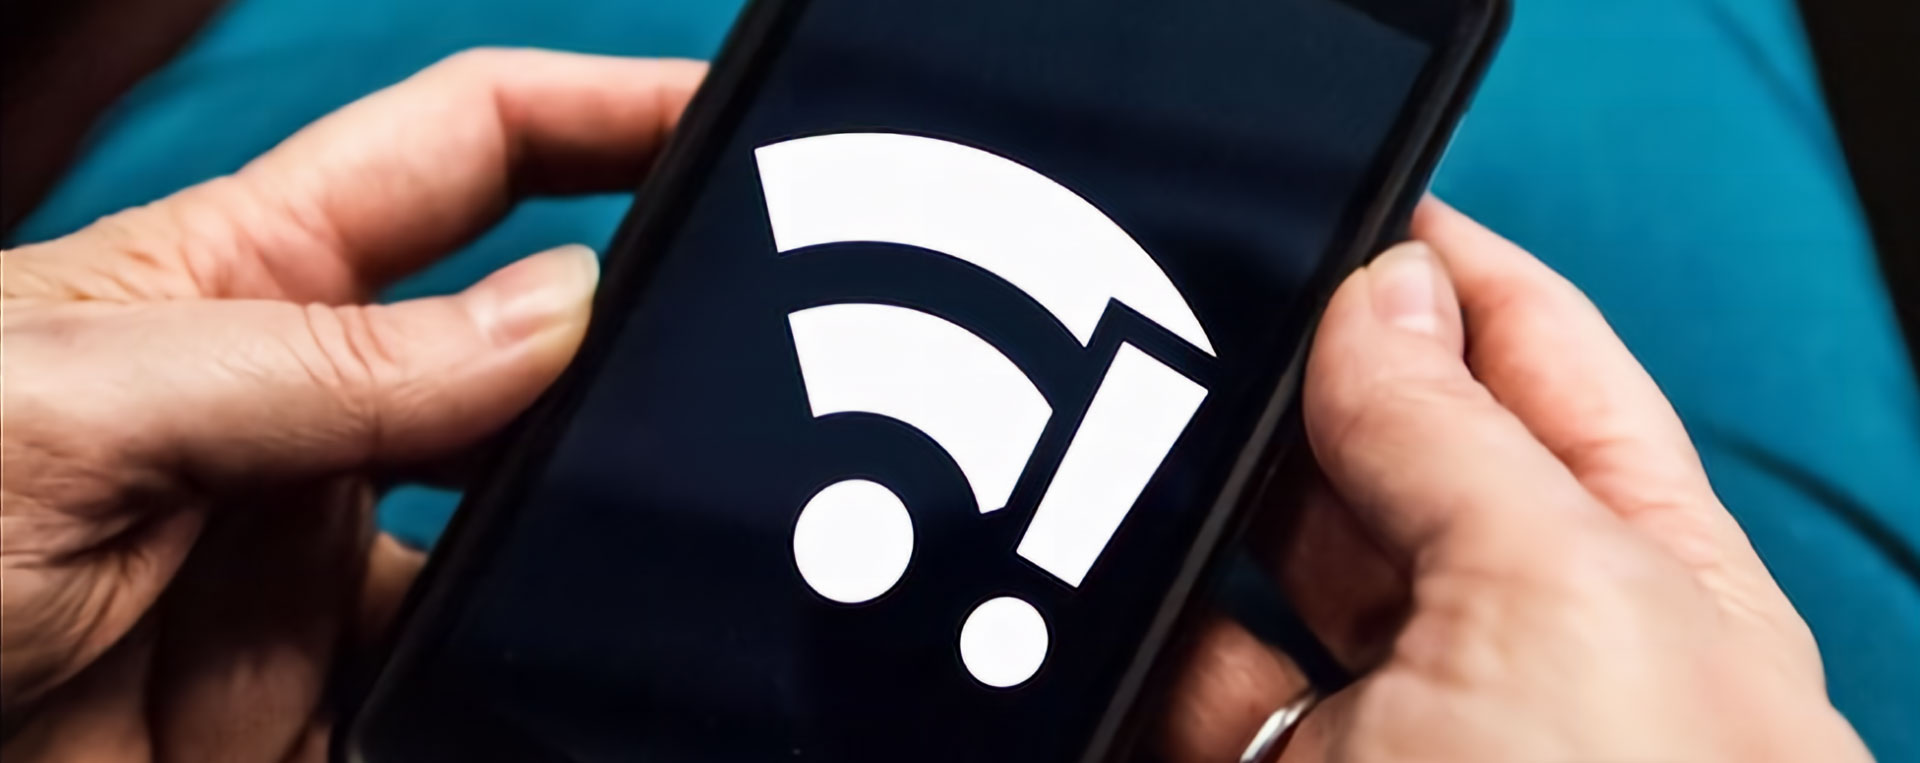 Wifi Tersambung Tanpa Internet Dapat Diatasi dengan Mudah